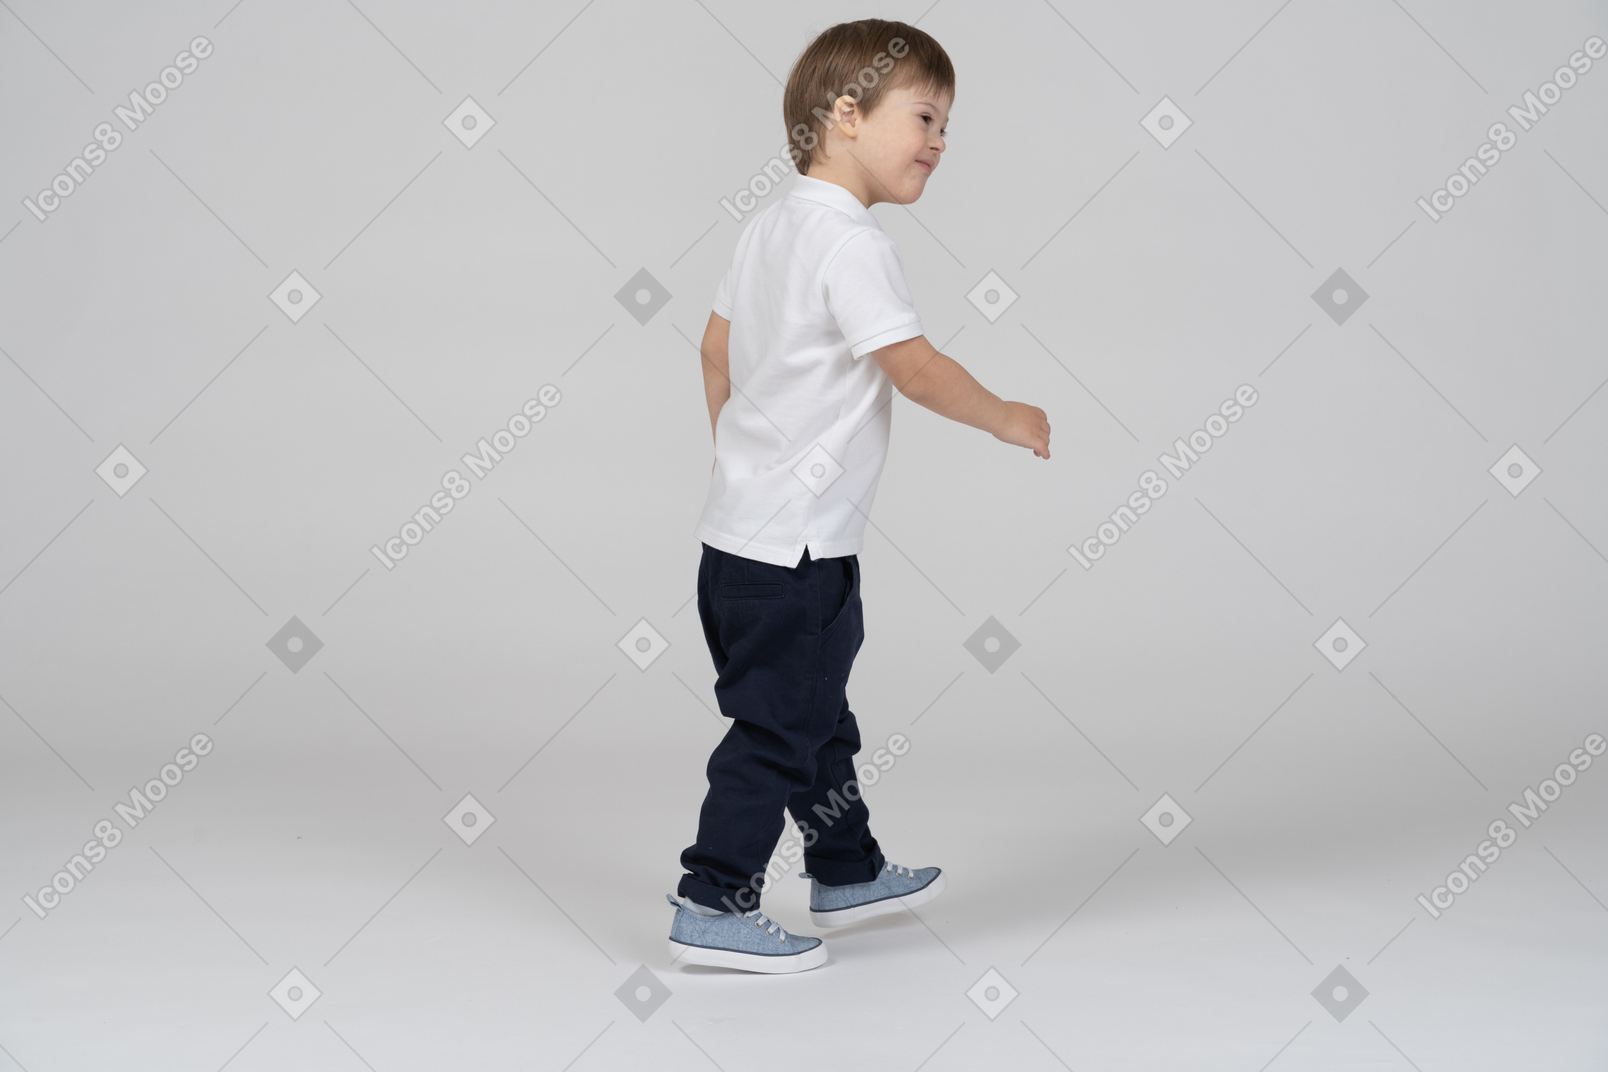 Vista traseira de três quartos de um menino andando e sorrindo